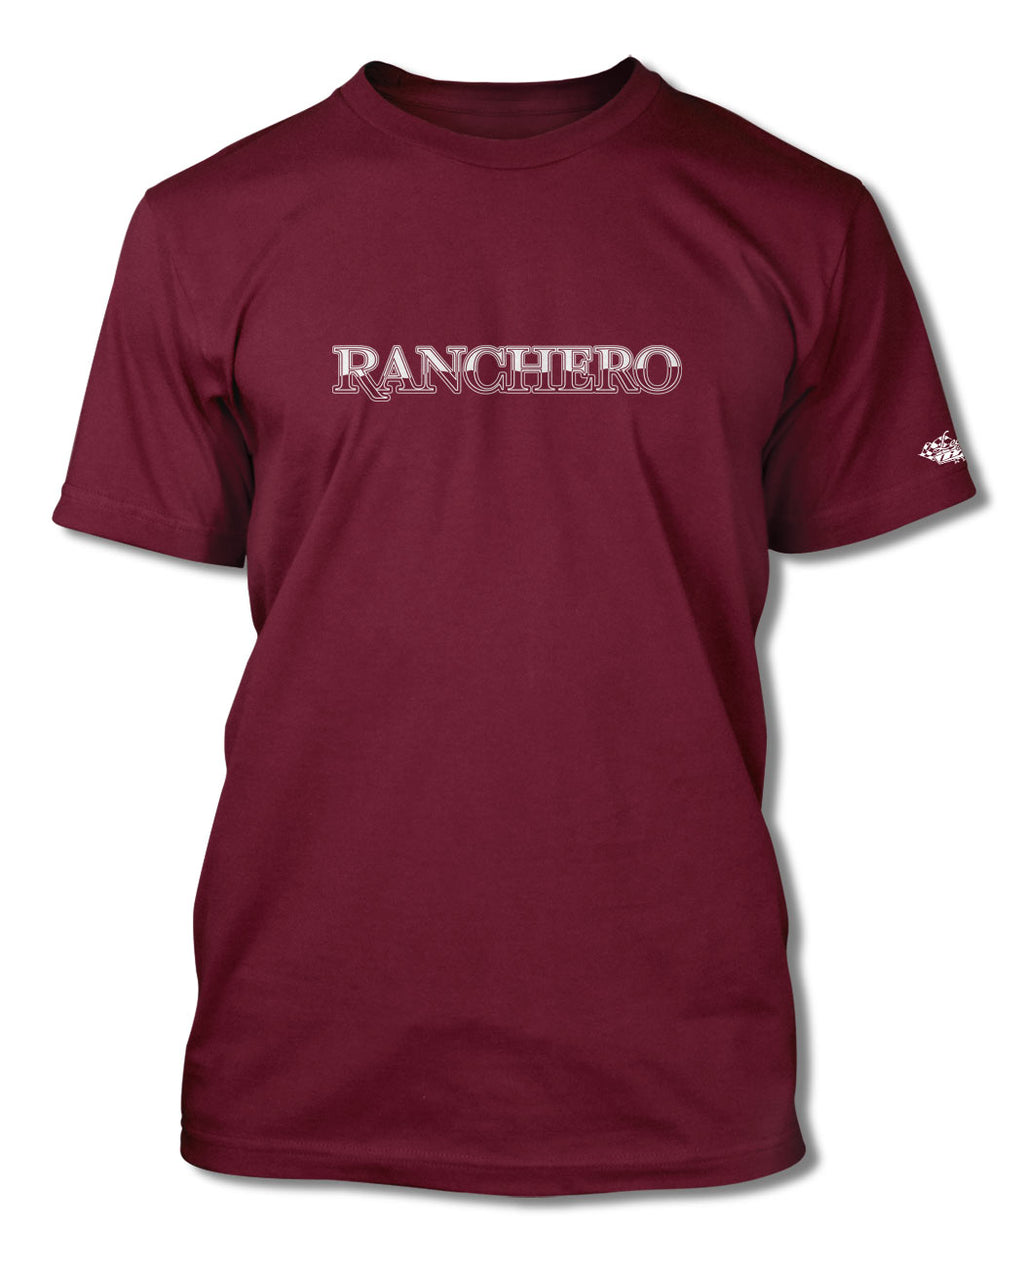 1977 - 1979 Ford Ranchero Emblem T-Shirt - Men - Emblem